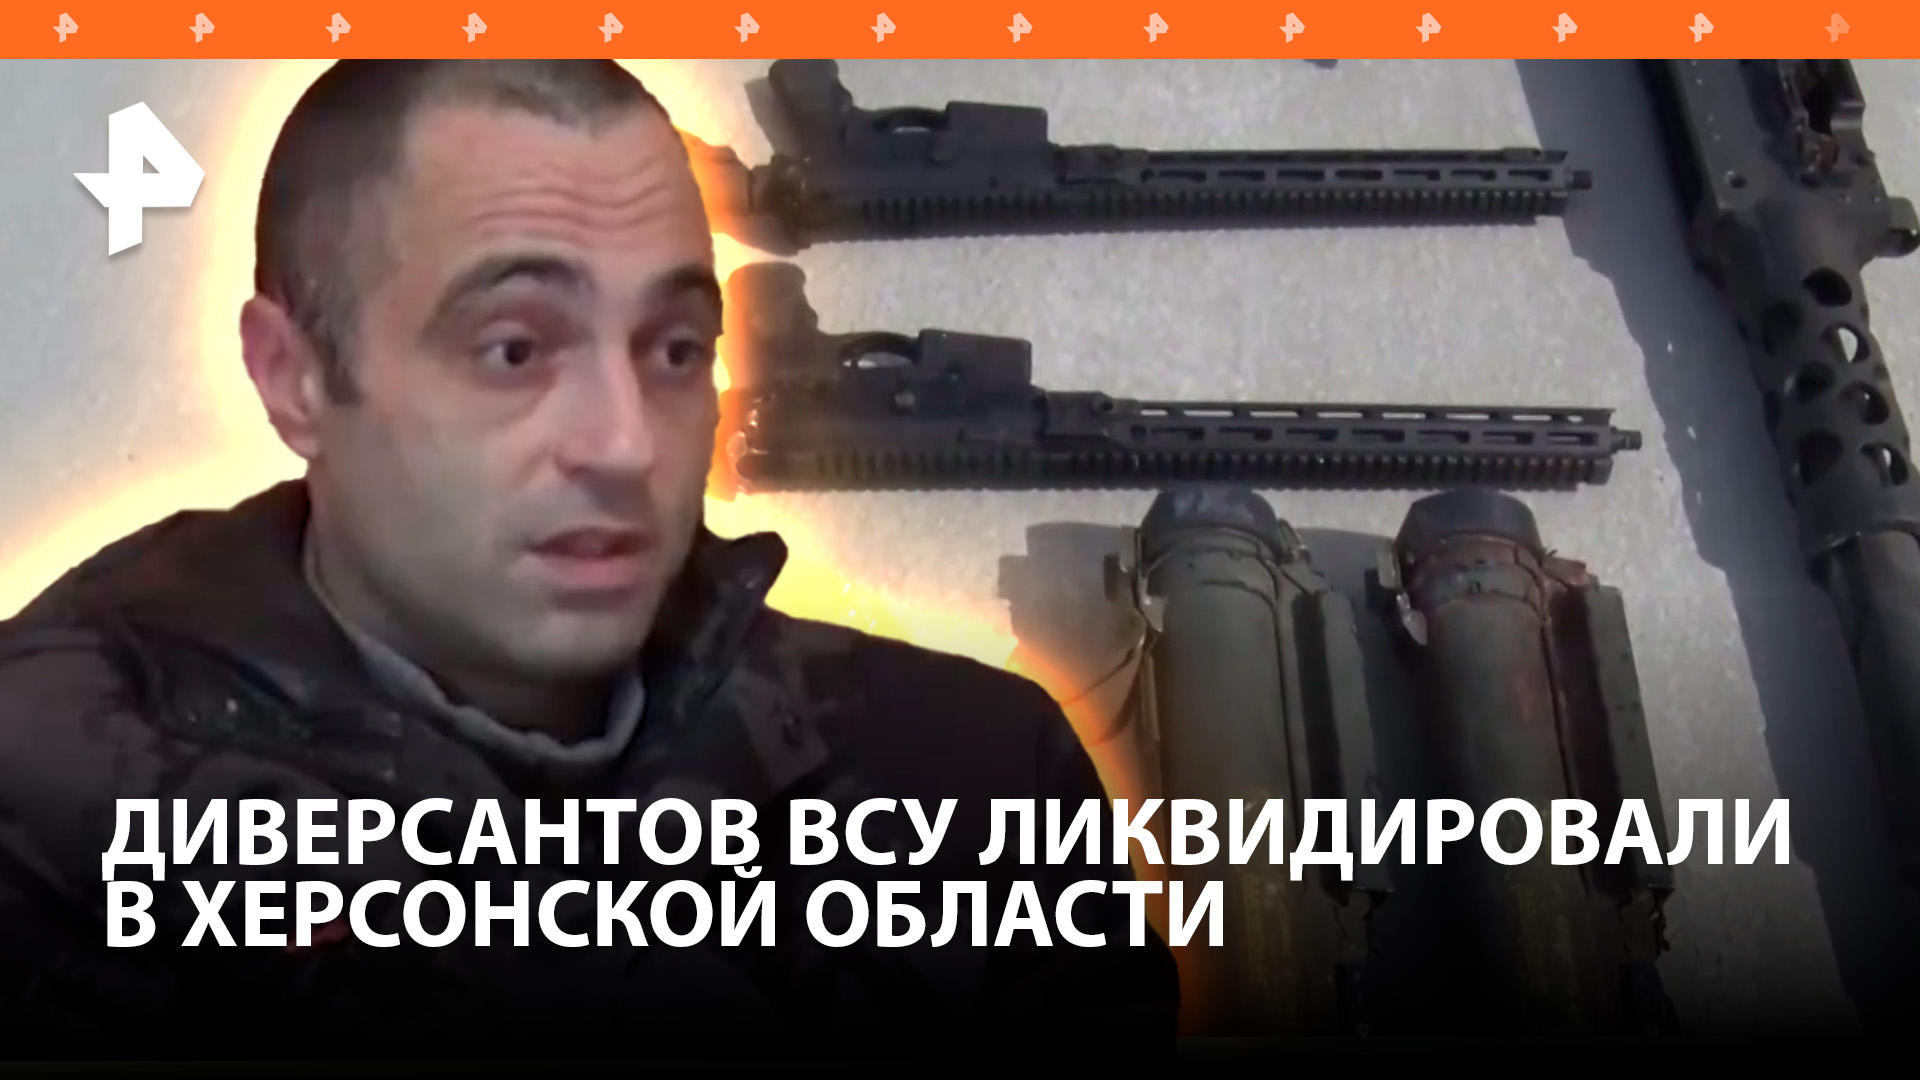 ФСБ опубликовала кадры ликвидации украинских диверсантов в Херсонской области / РЕН